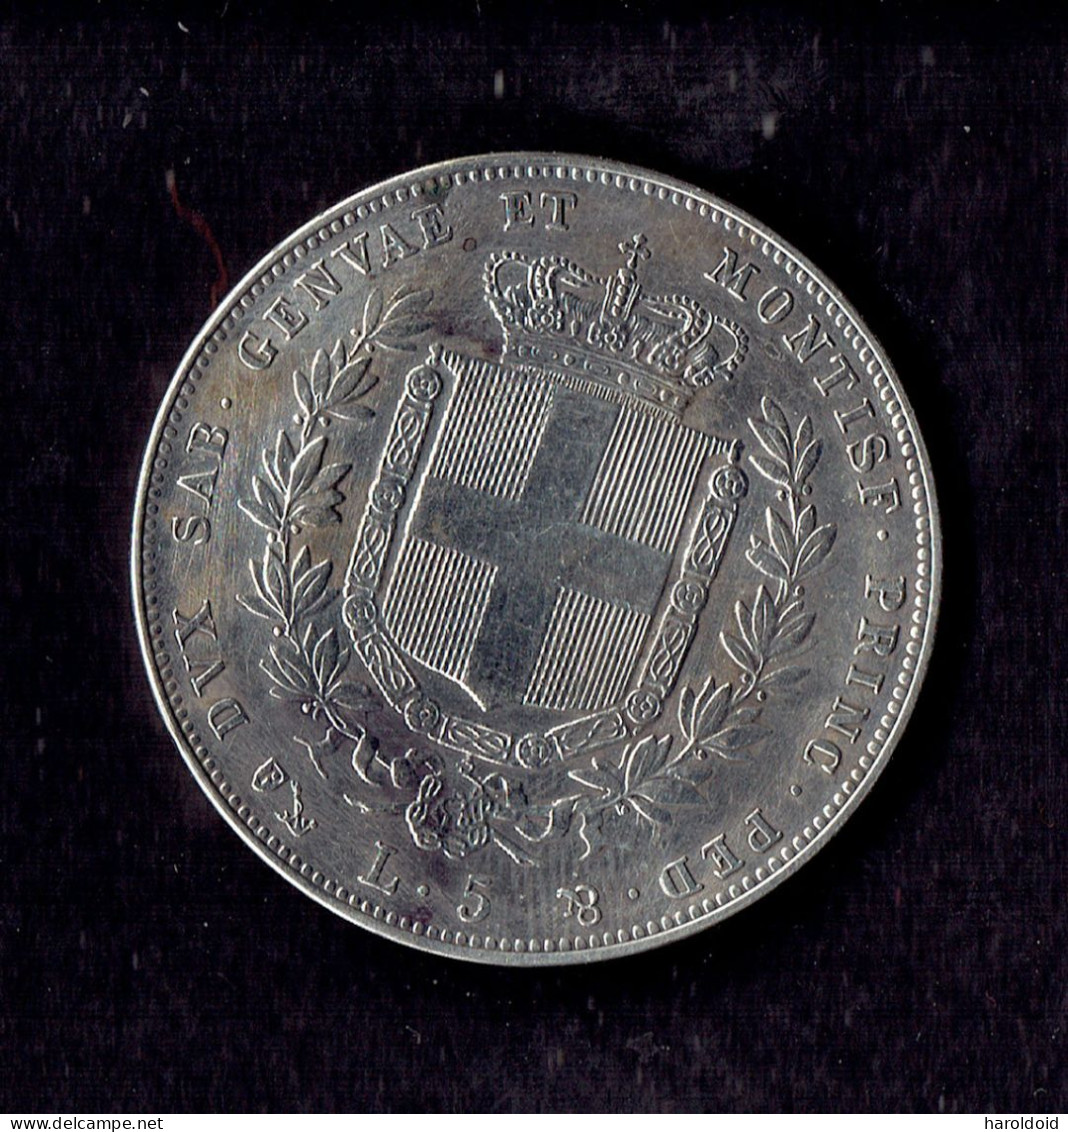 5 LIRE SARDAIGNE 1859 P - VICTORIUS EMMANUEL - Piémont-Sardaigne-Savoie Italienne